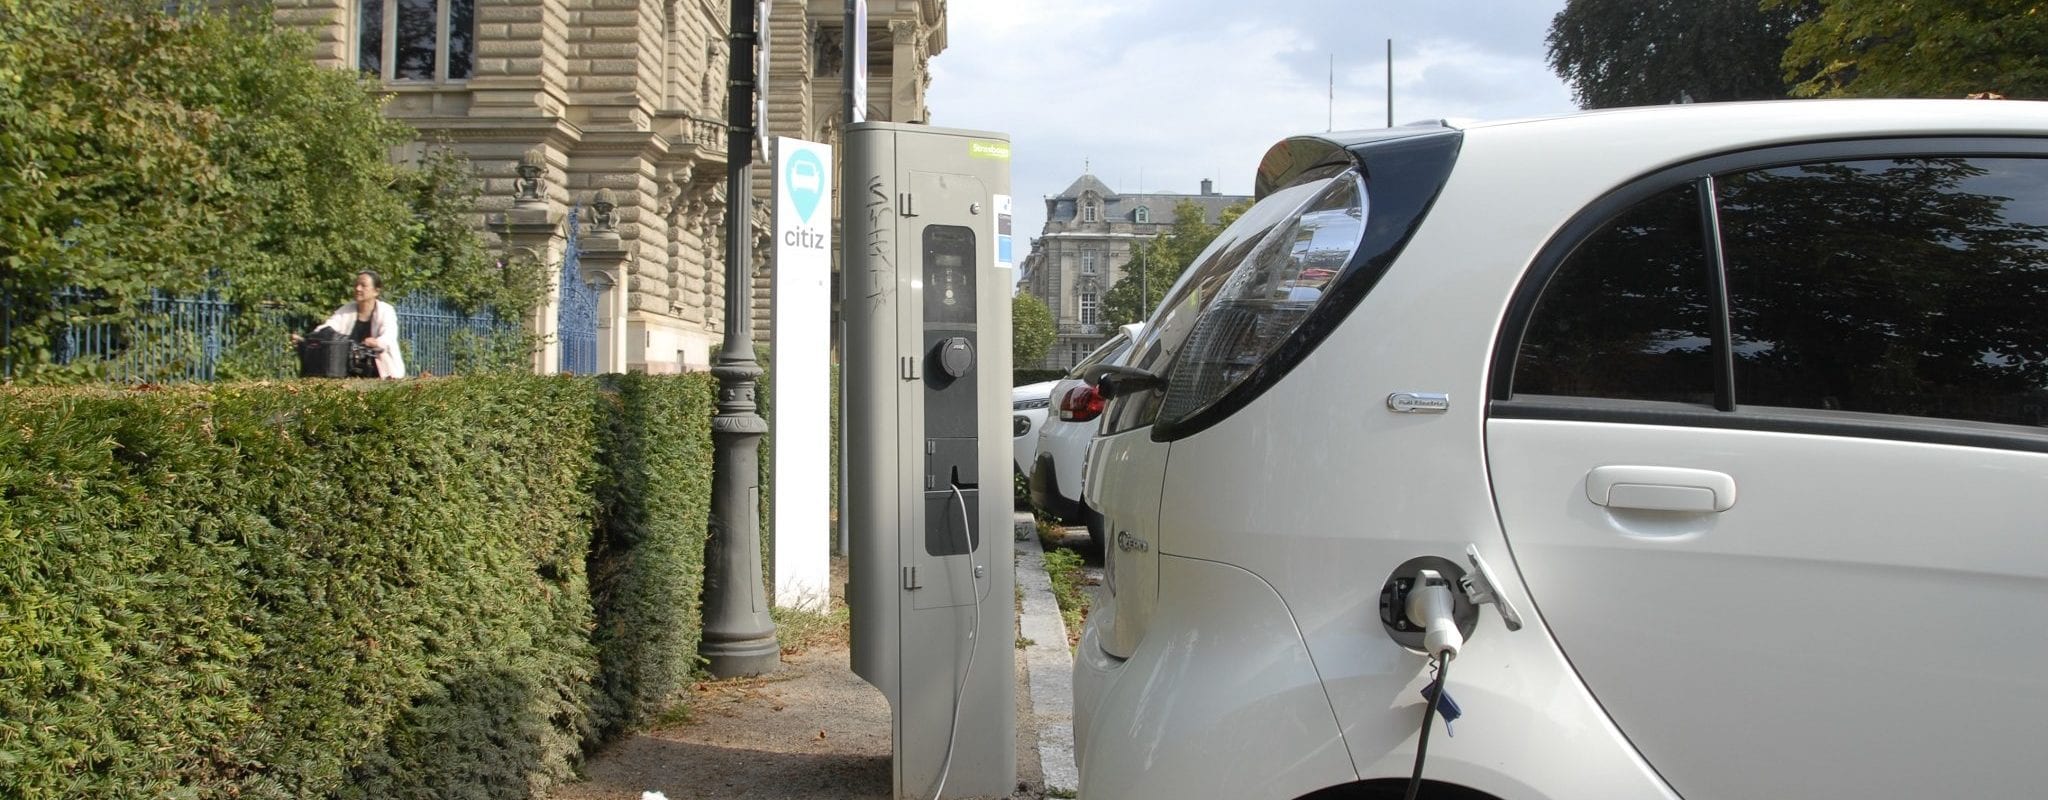 Le nombre de bornes pour voitures électriques va exploser à Strasbourg en 2019